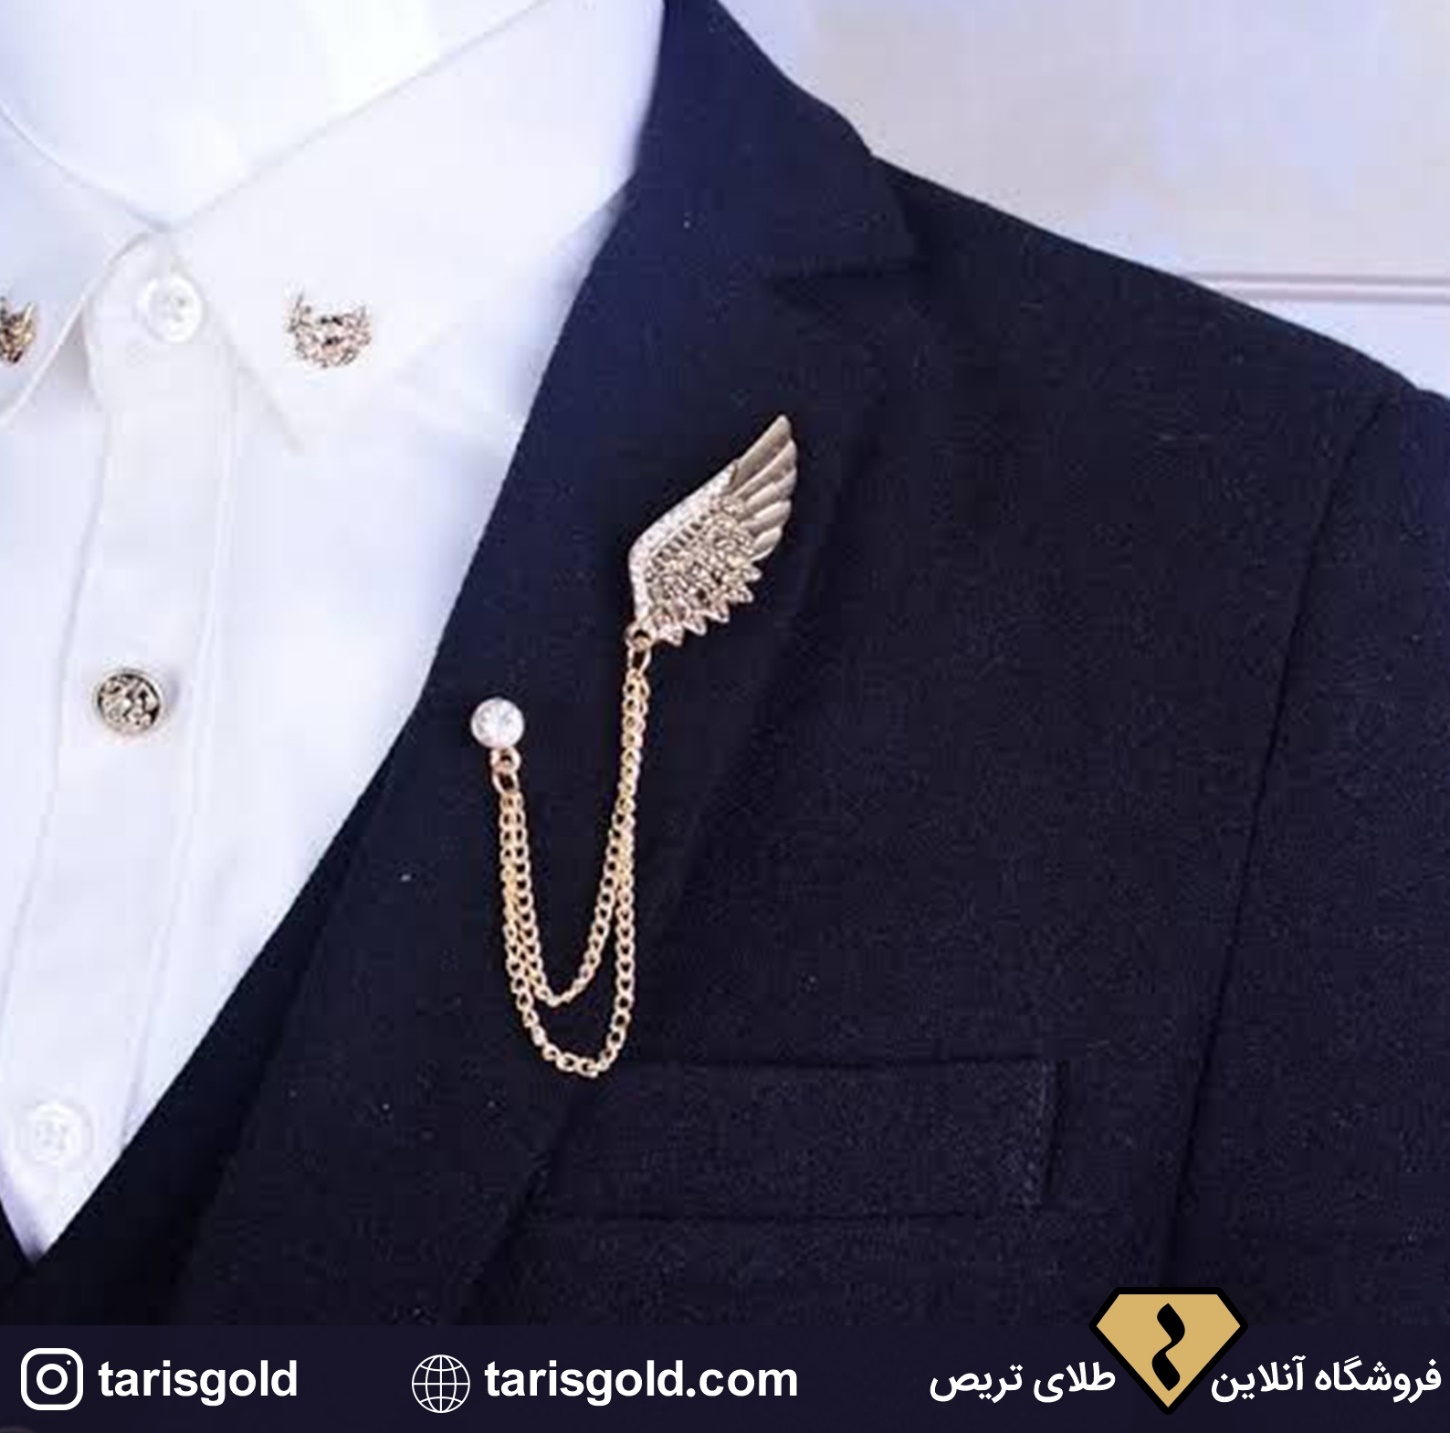 خرید سنجاق سینه مردانه طلا مدل 2021 - فروشگاه آنلاین طلای تریص